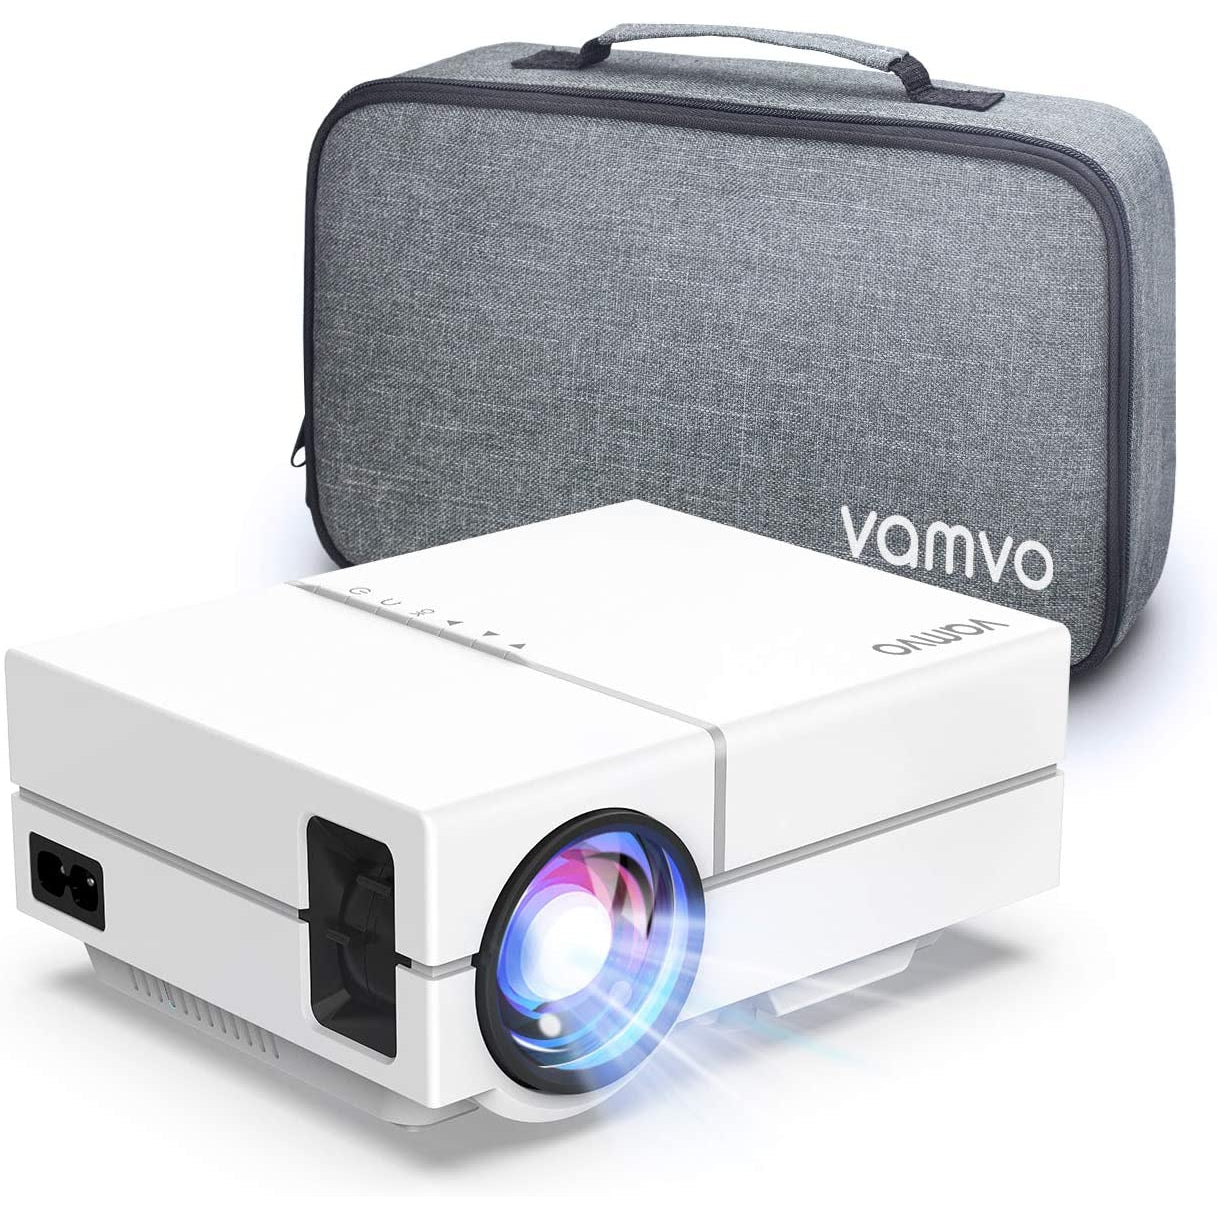 Vamvo L4500 Home Mini Portable Projector - White